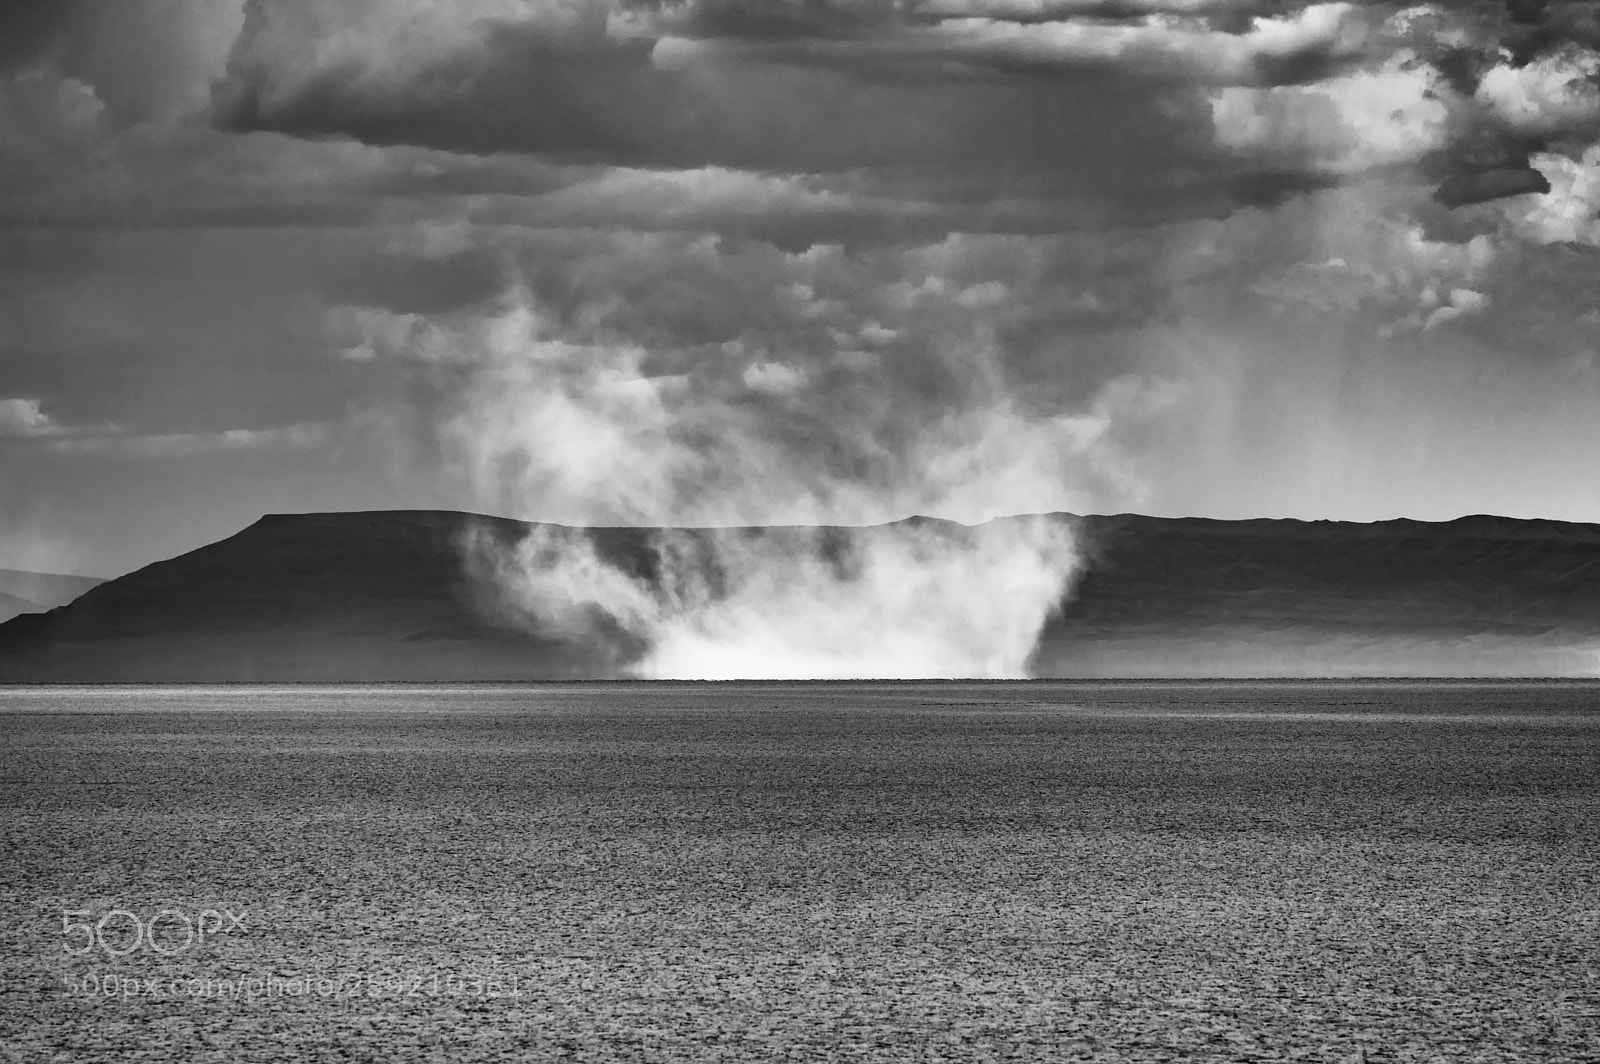 Pentax K-3 sample photo. Alvord desert dust storm photography